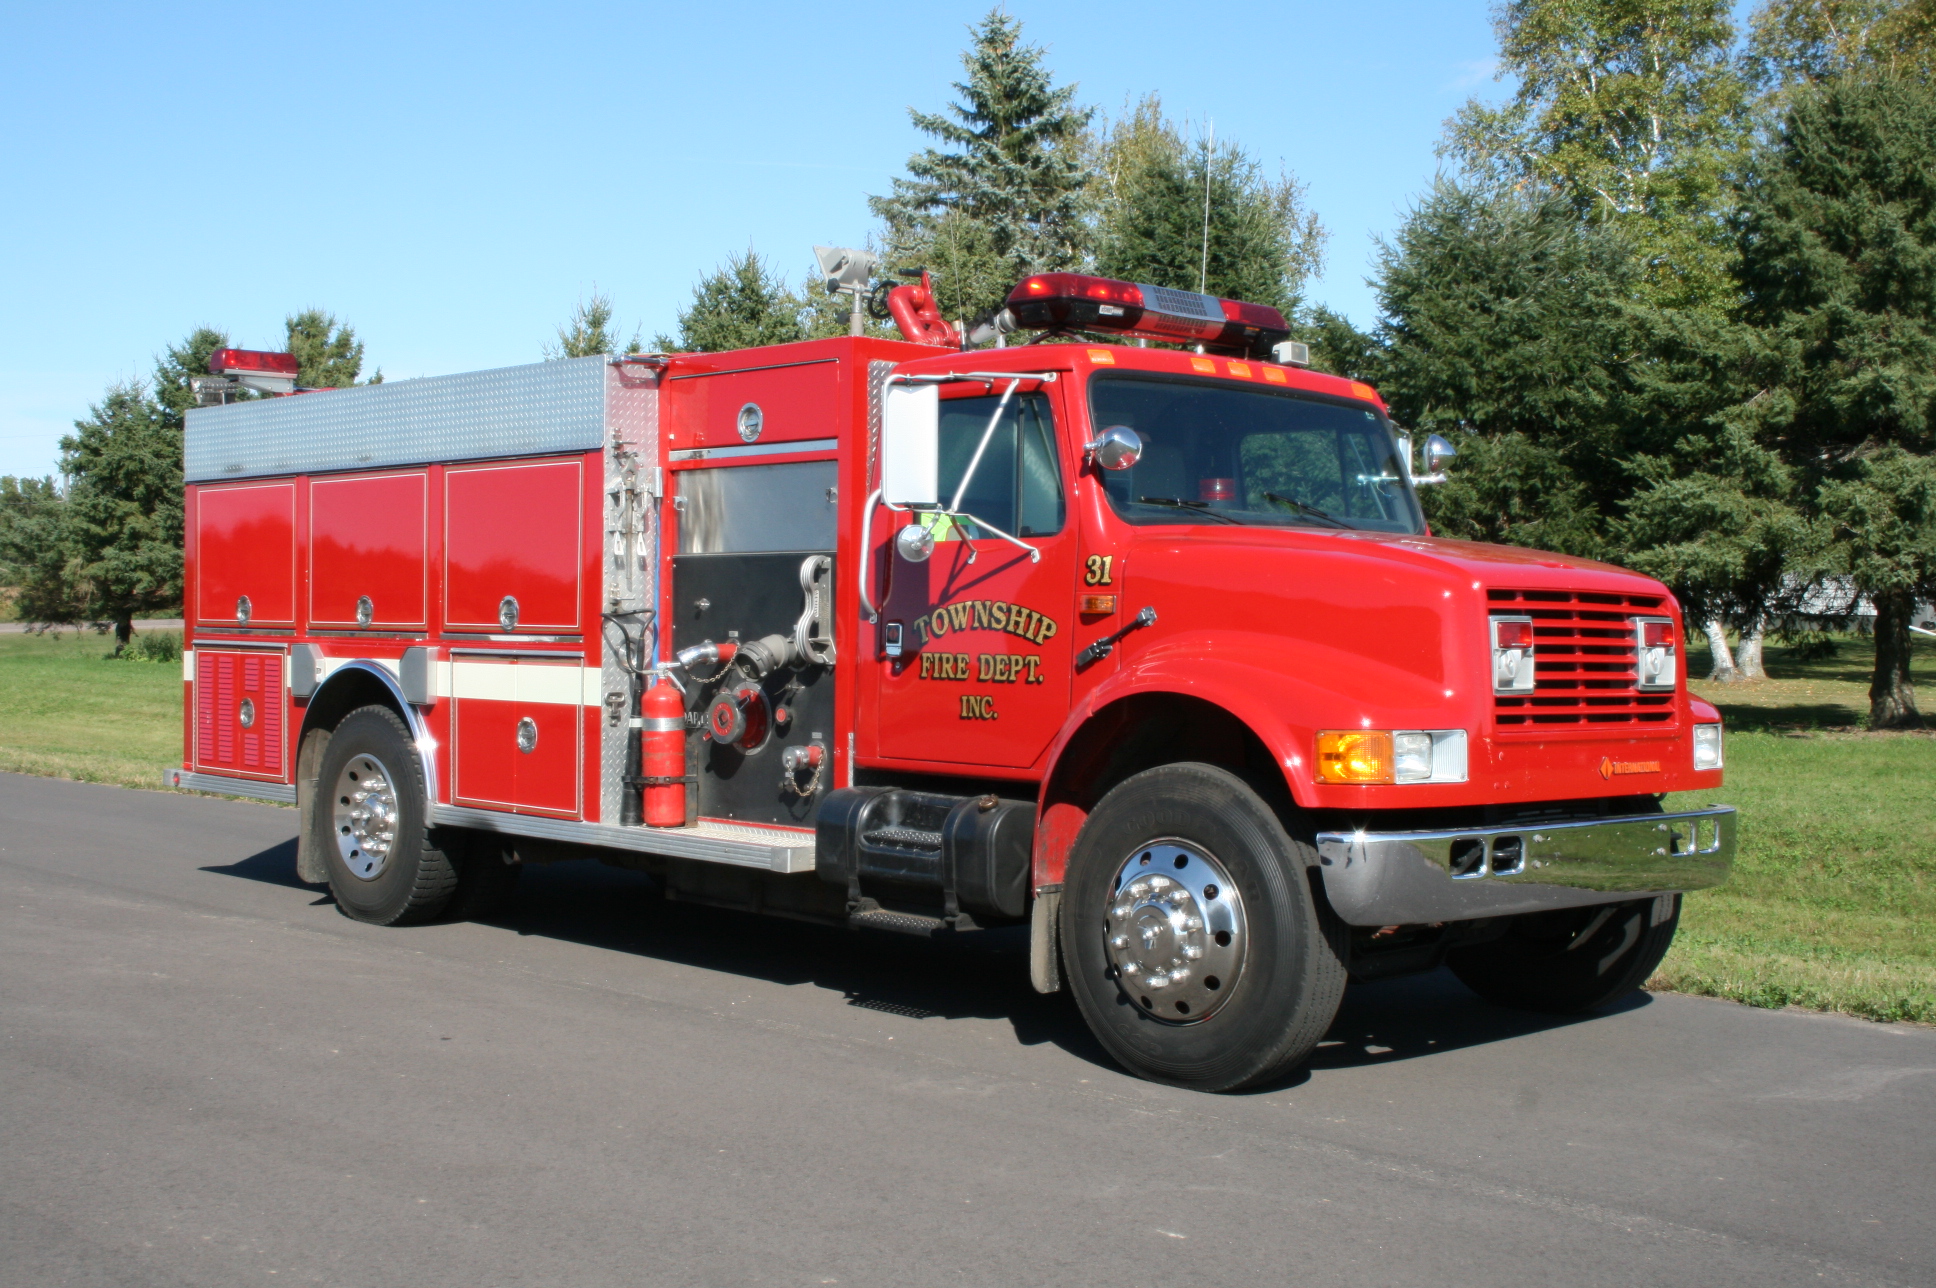 Washington Township fire truck #31